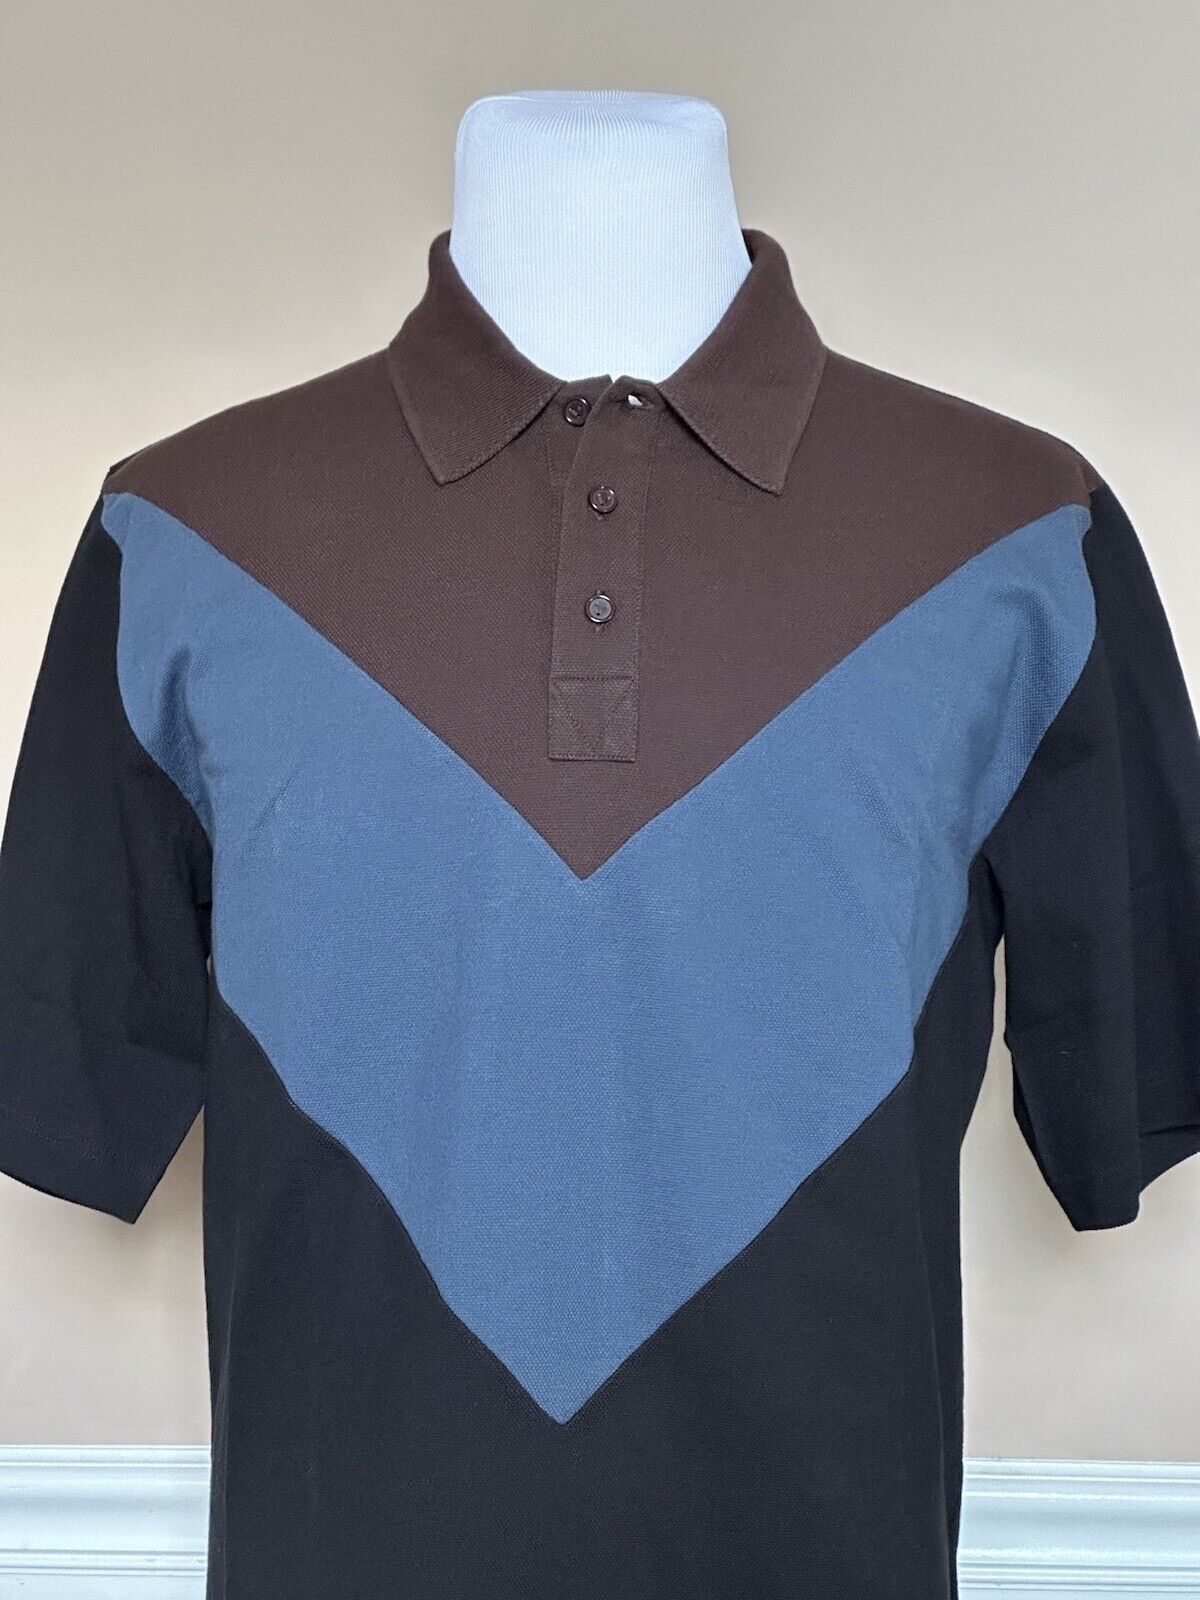 NWT $700 Рубашка-поло из хлопка пике Bottega Veneta Multicolor M (оверсайз) 704205 